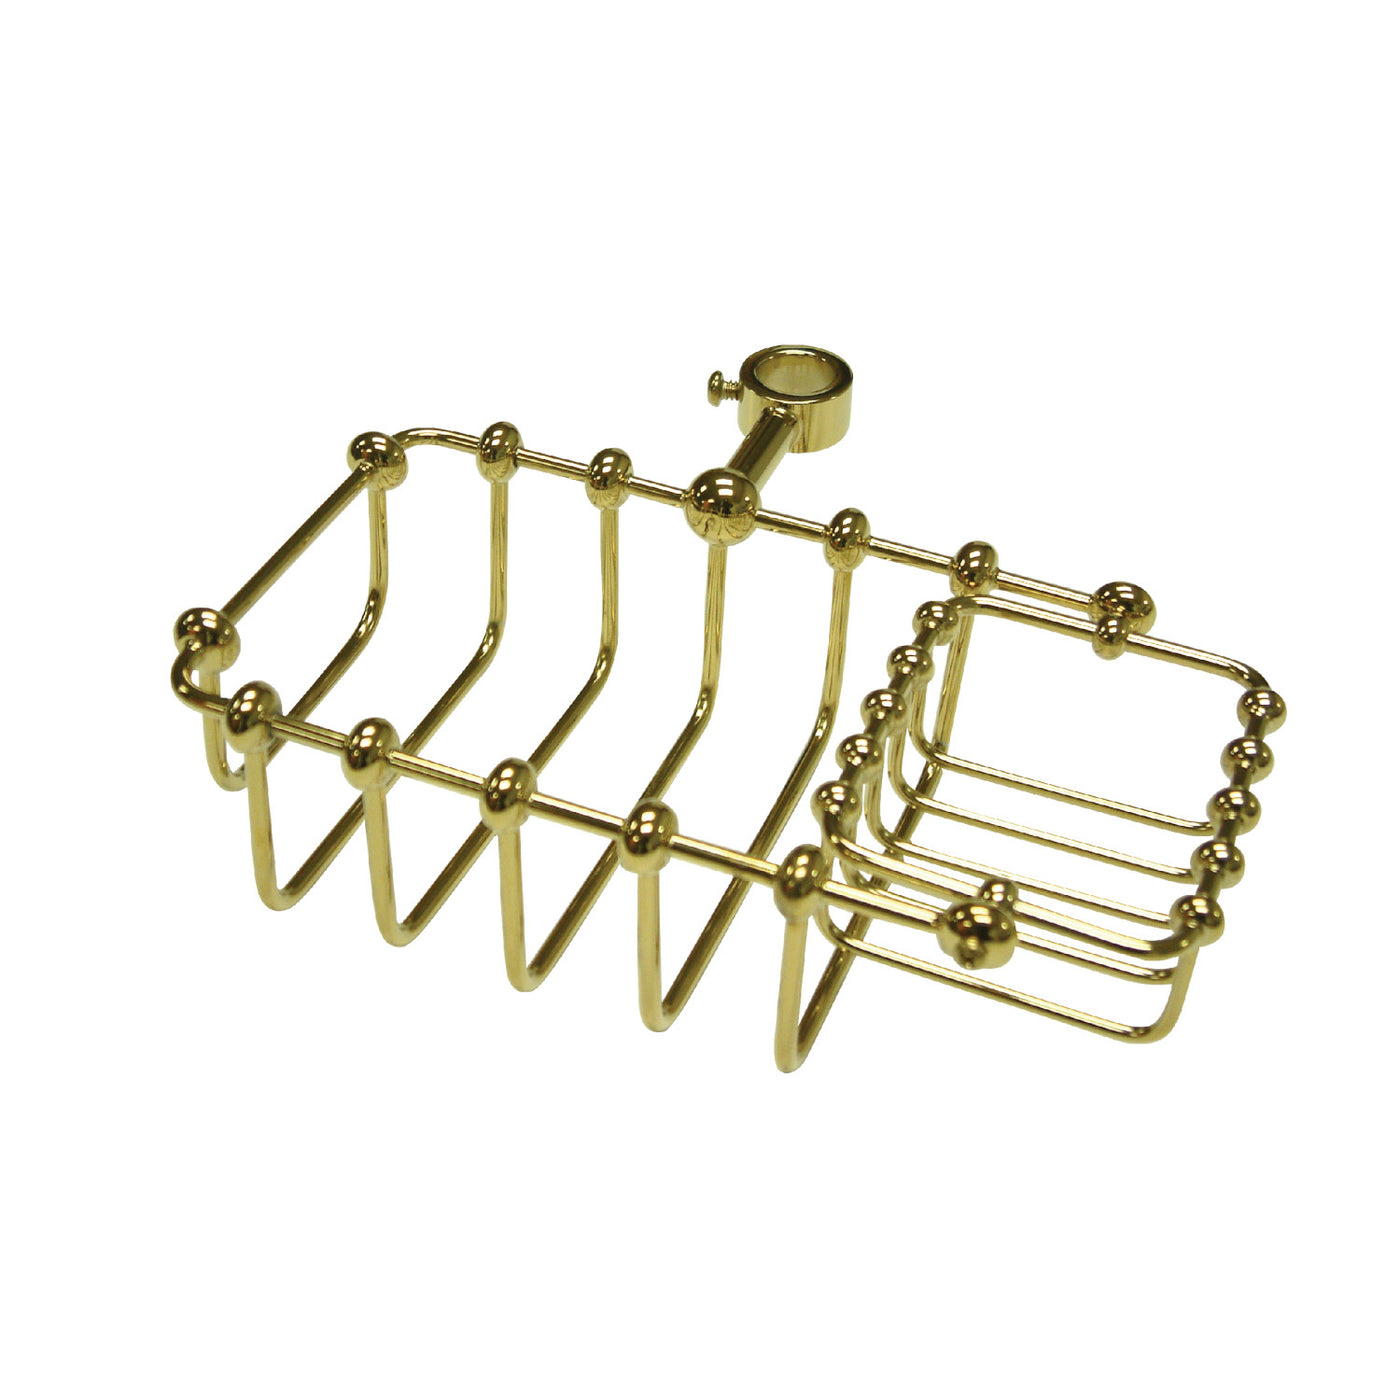 Elements of Design DS2142 7-Inch Riser Mount Soap Basket, Polished Brass